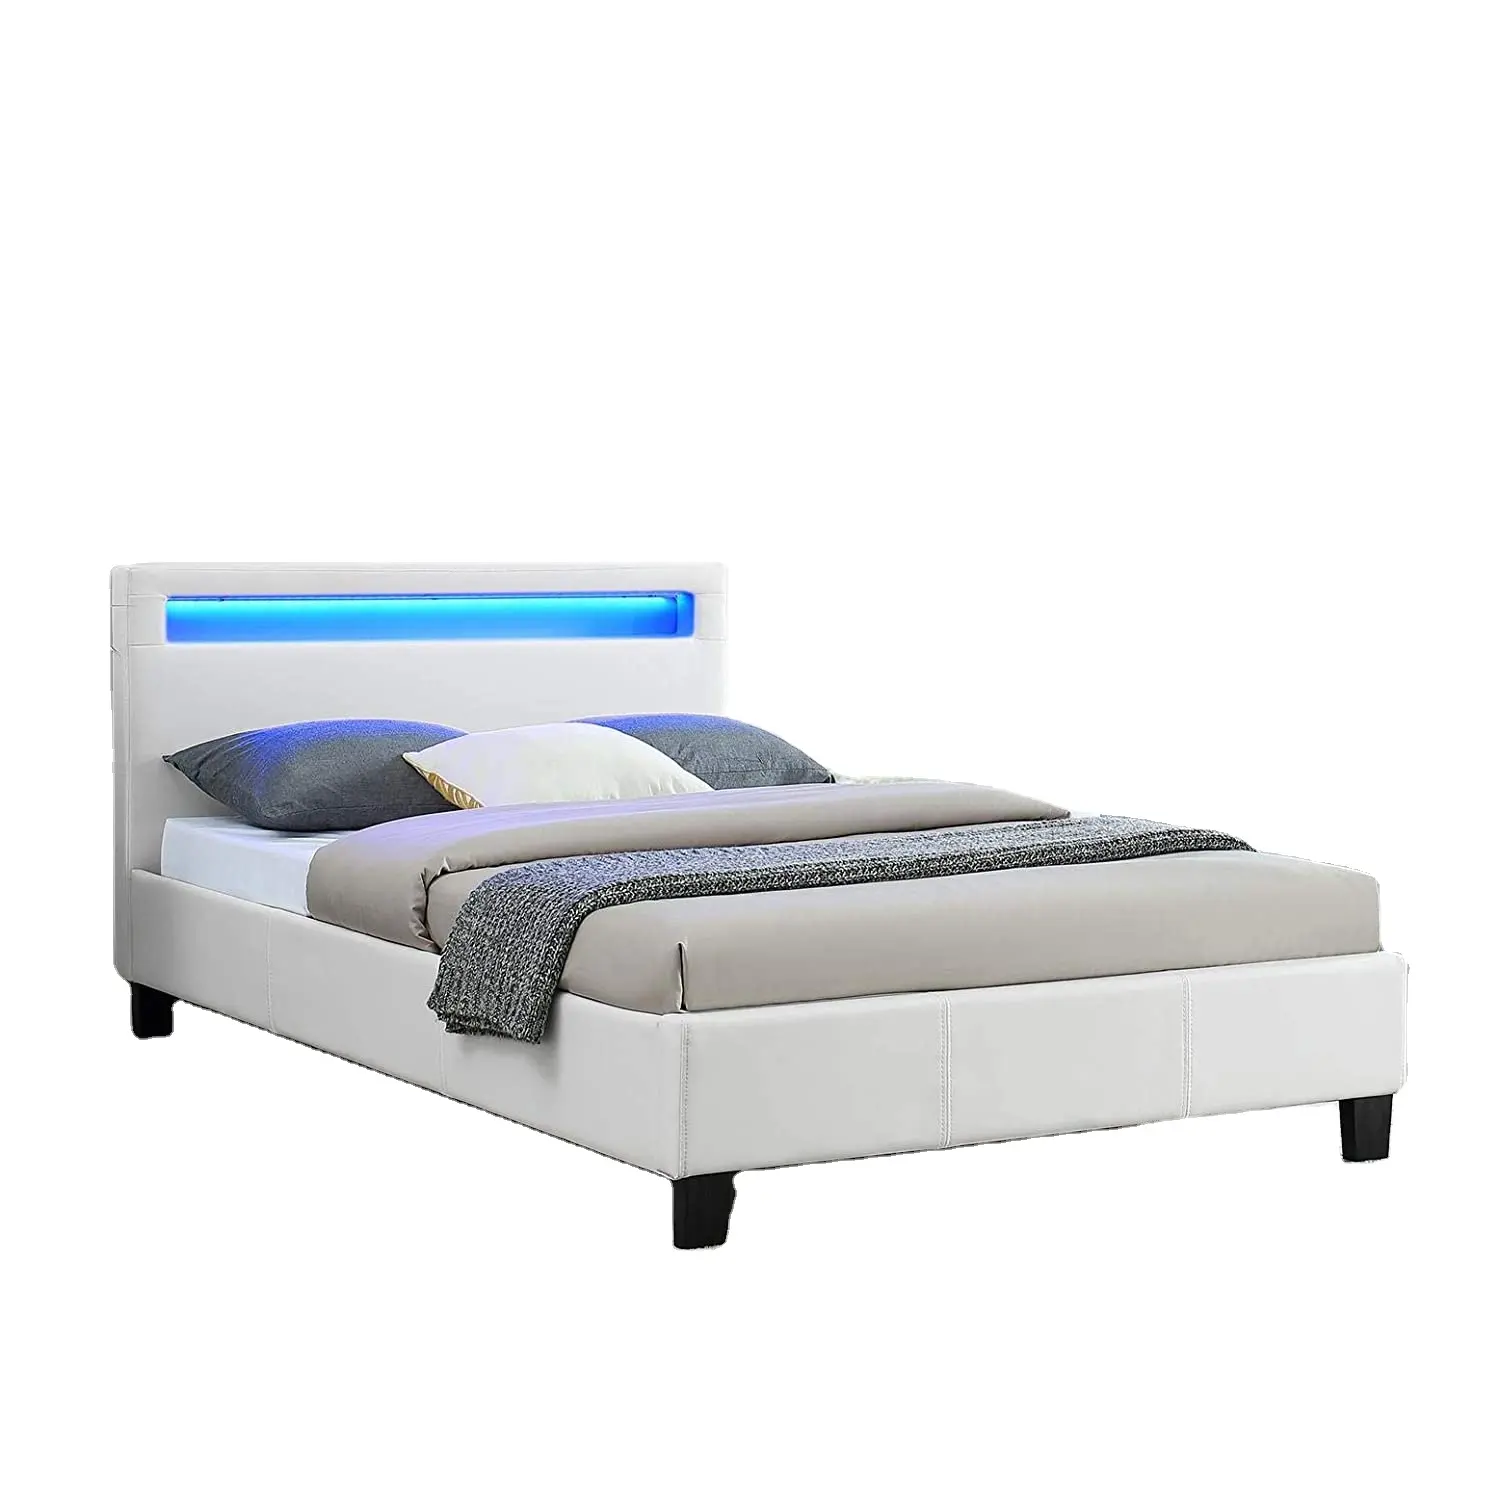 Aangepaste Moderne Design Led Licht 5 Kleur King Bed Frame Infrarood Rood Full Size Wit Pu Leather Soft Led Bed